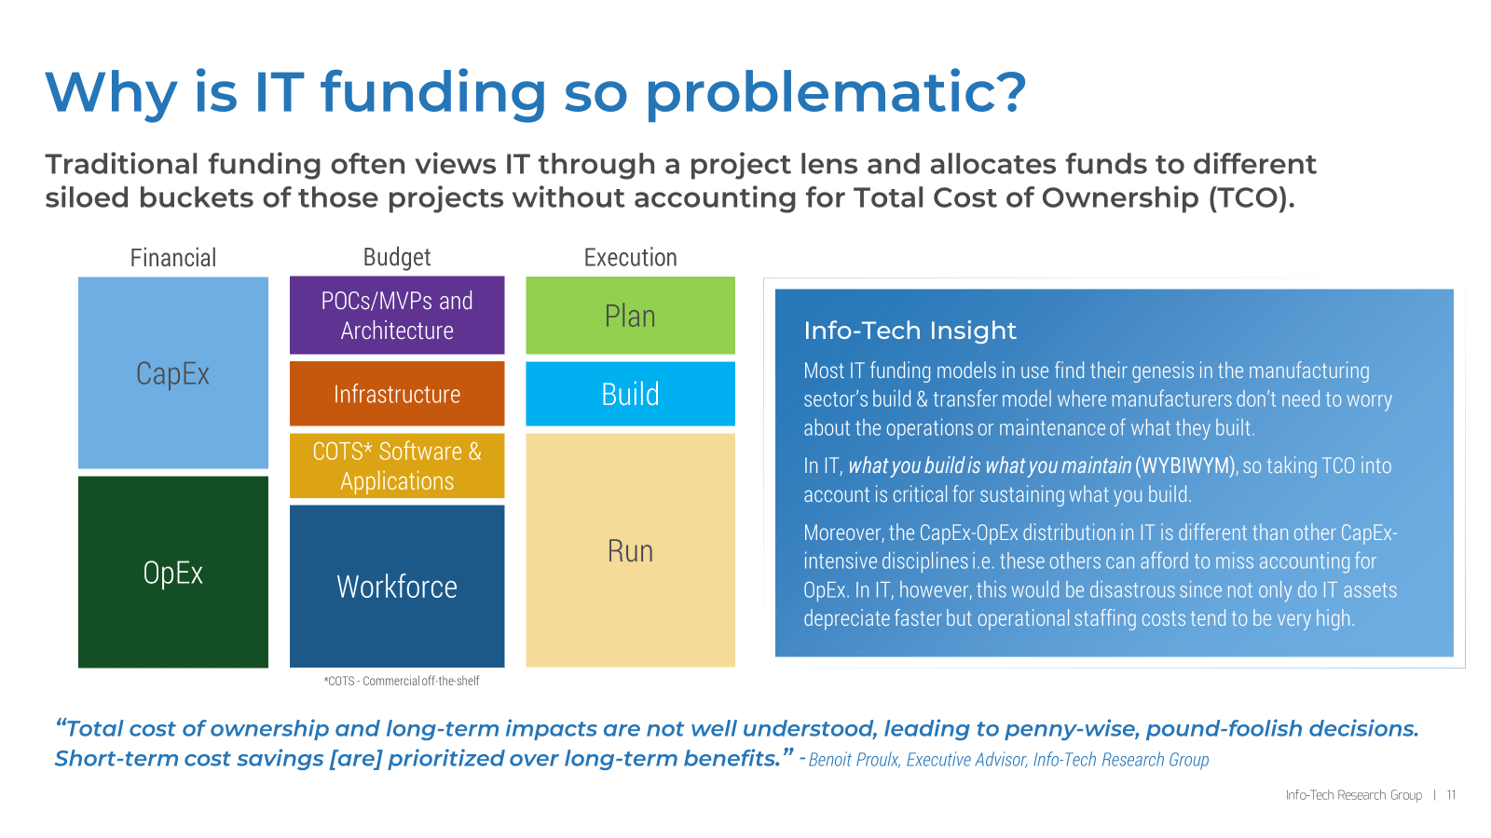 Develop a Flexible IT Funding Model